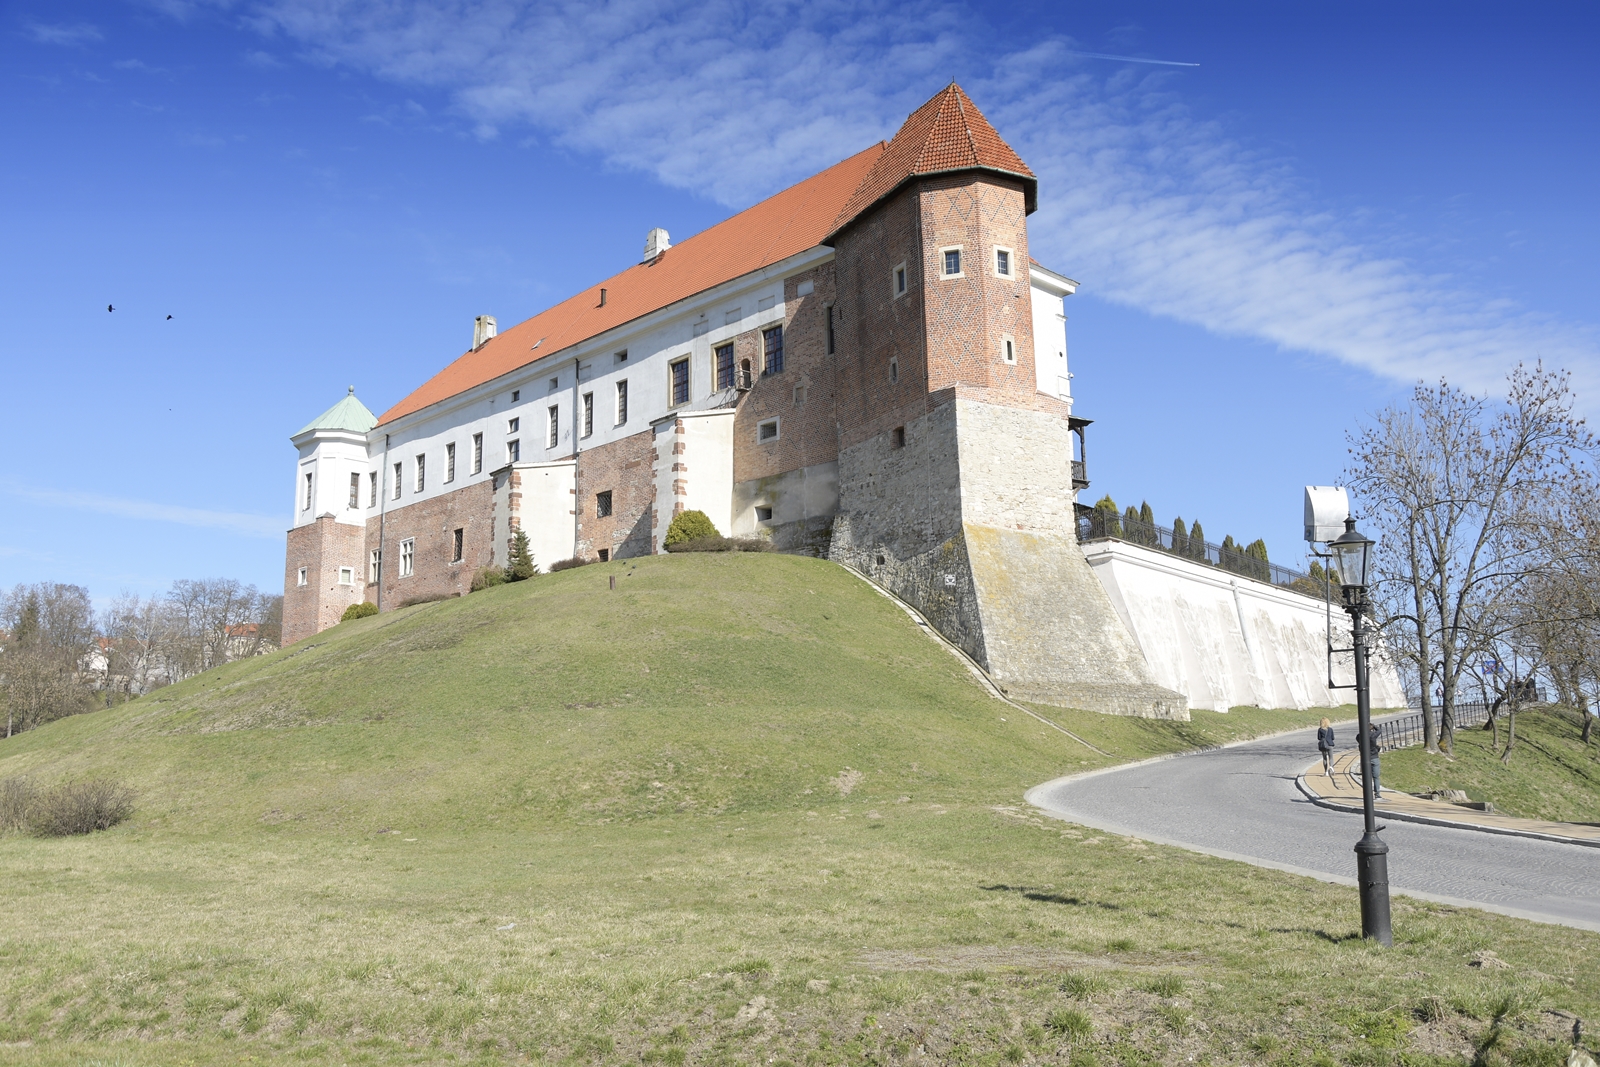 Zamek jest jedną z atrakcji Sandomierza - ulokowany jest na pokrytym trawą wzgórzu.